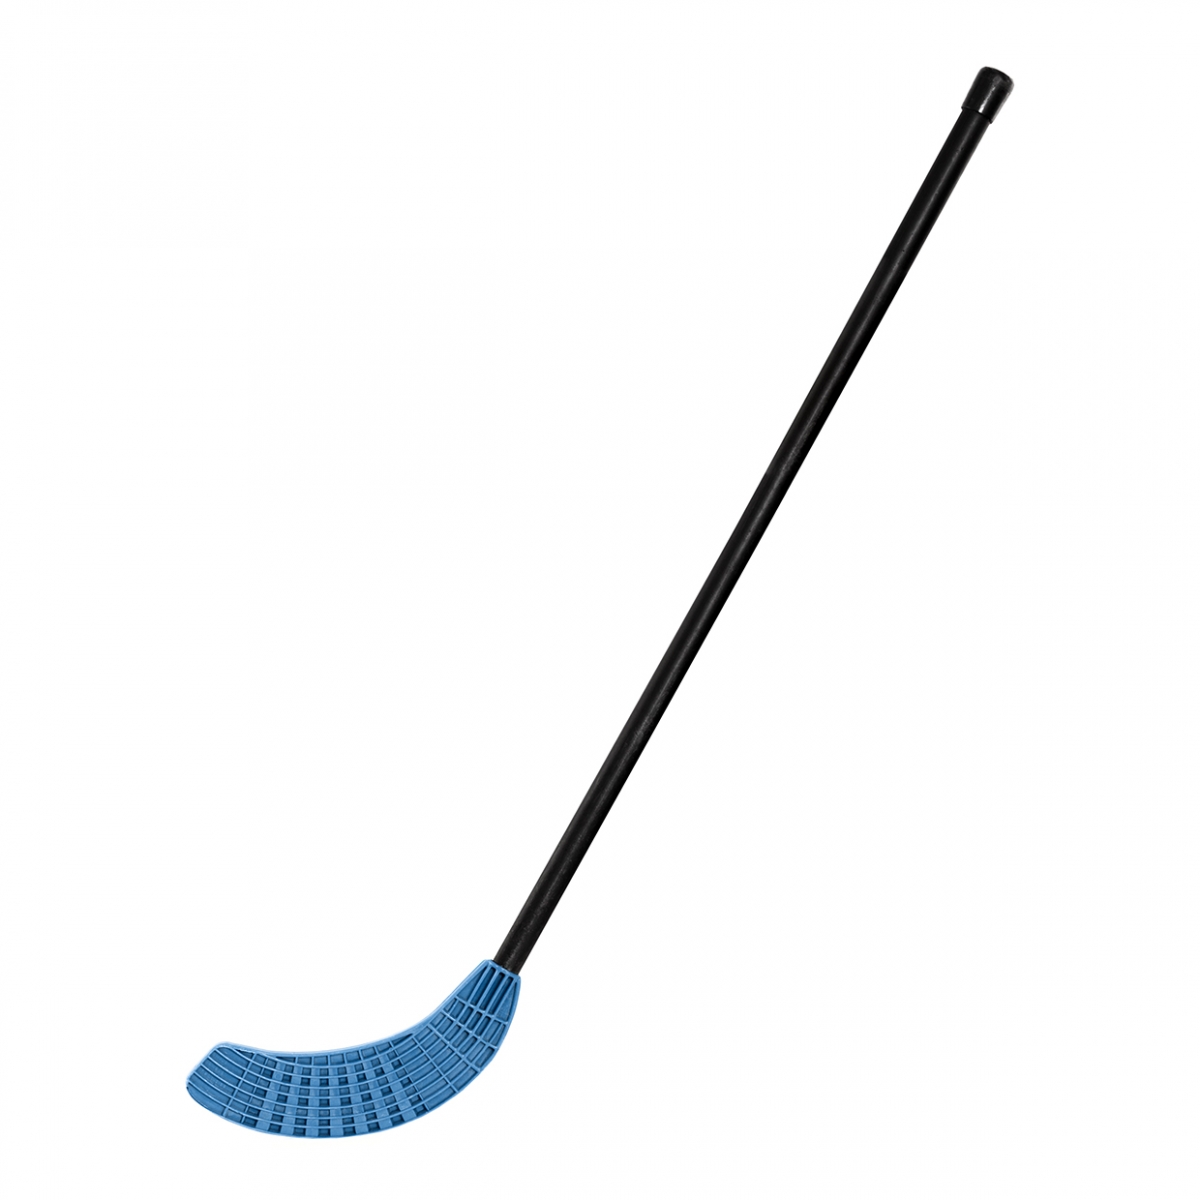 Imagen en la que se ve un palo de hockey